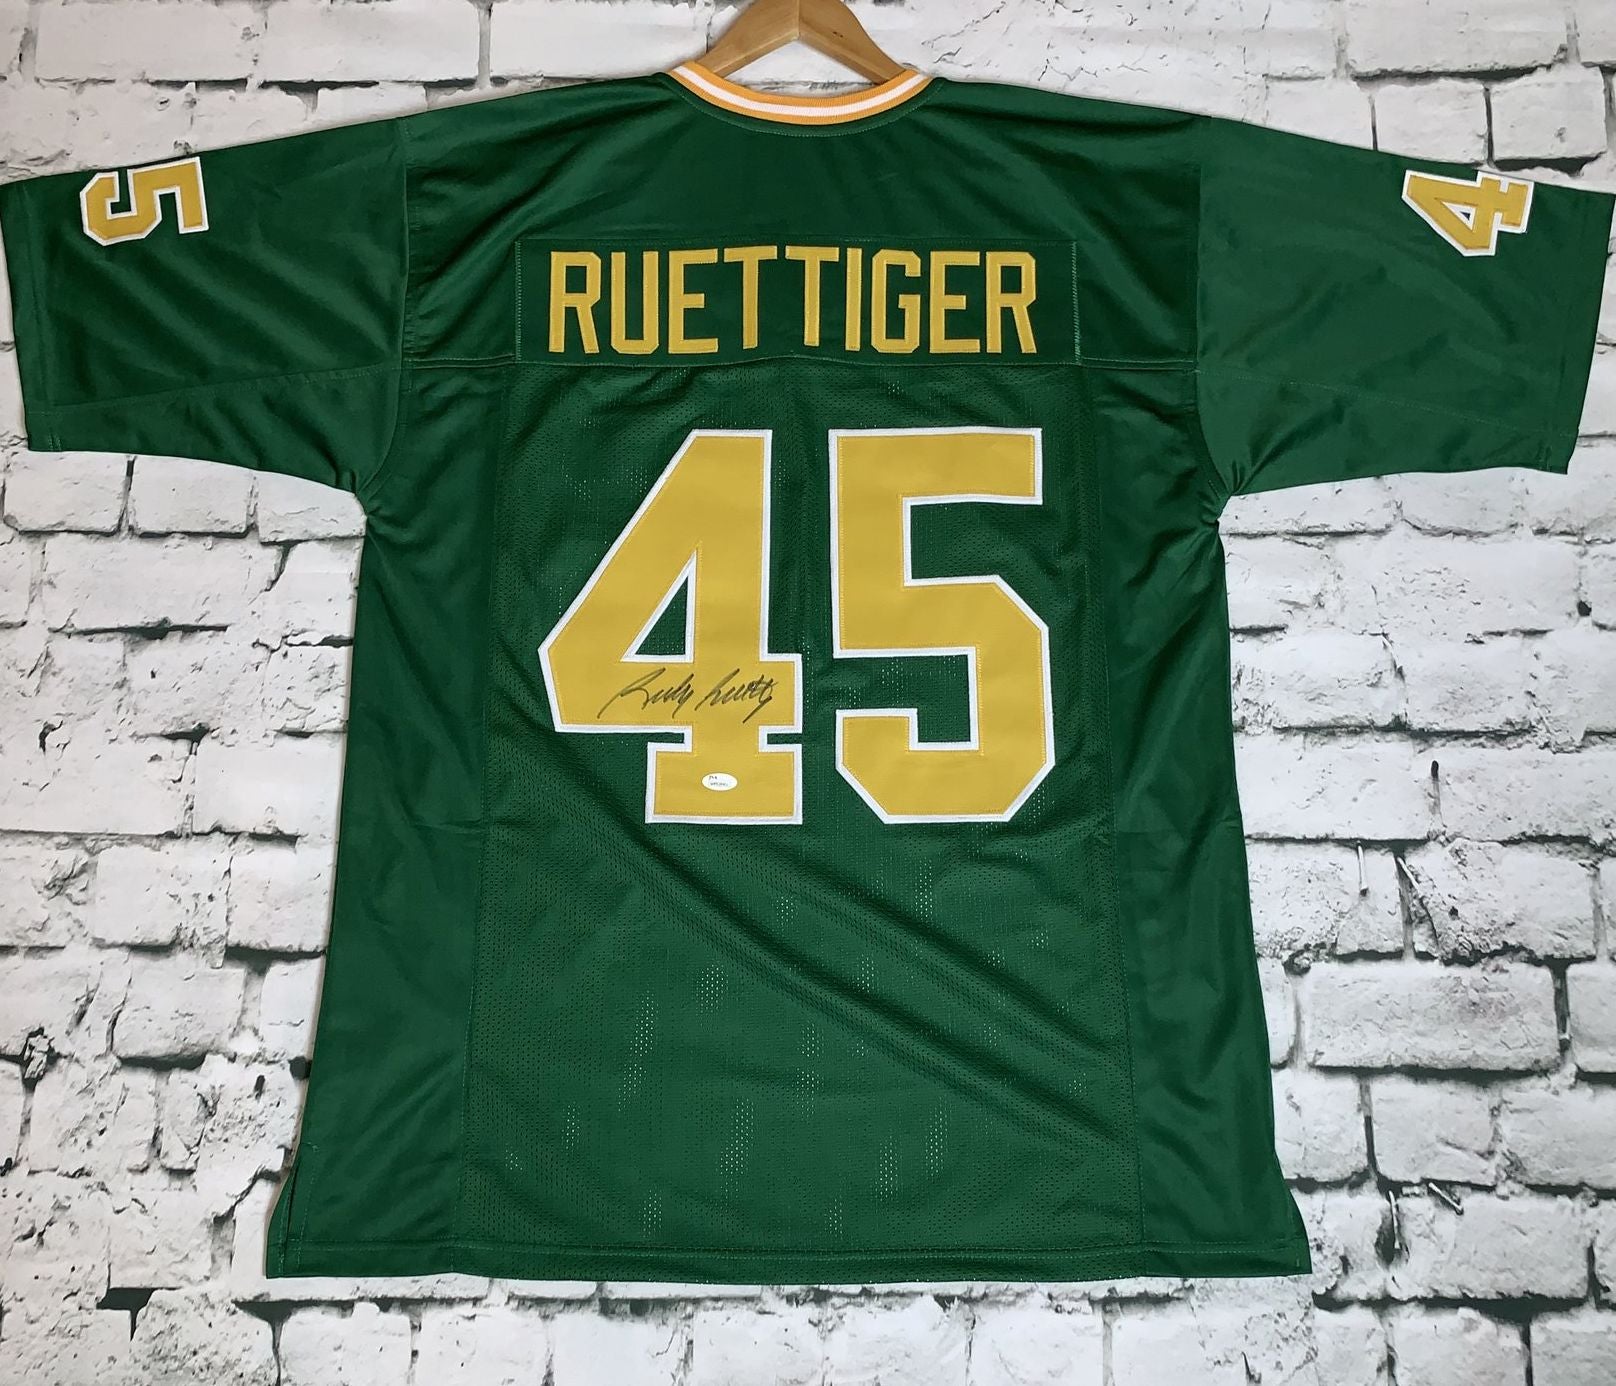 rudy ruettiger signed jersey